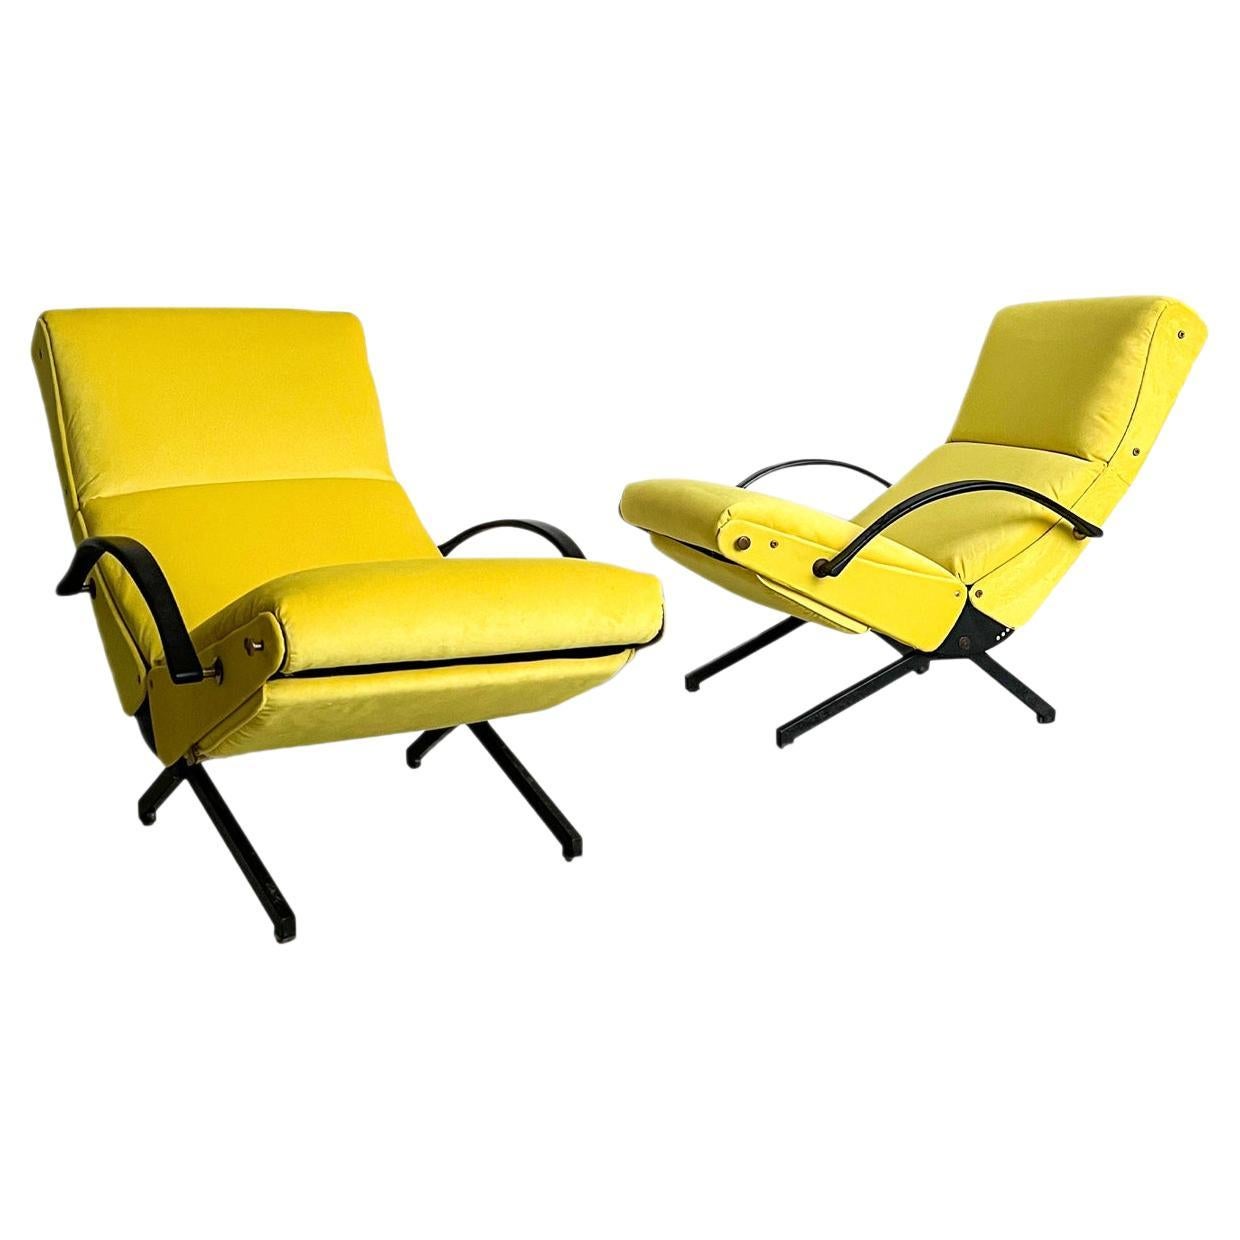 Vintage Italian P40 Lounge Chair by Osvaldo Borsani for Tecno, Yellow Velvet